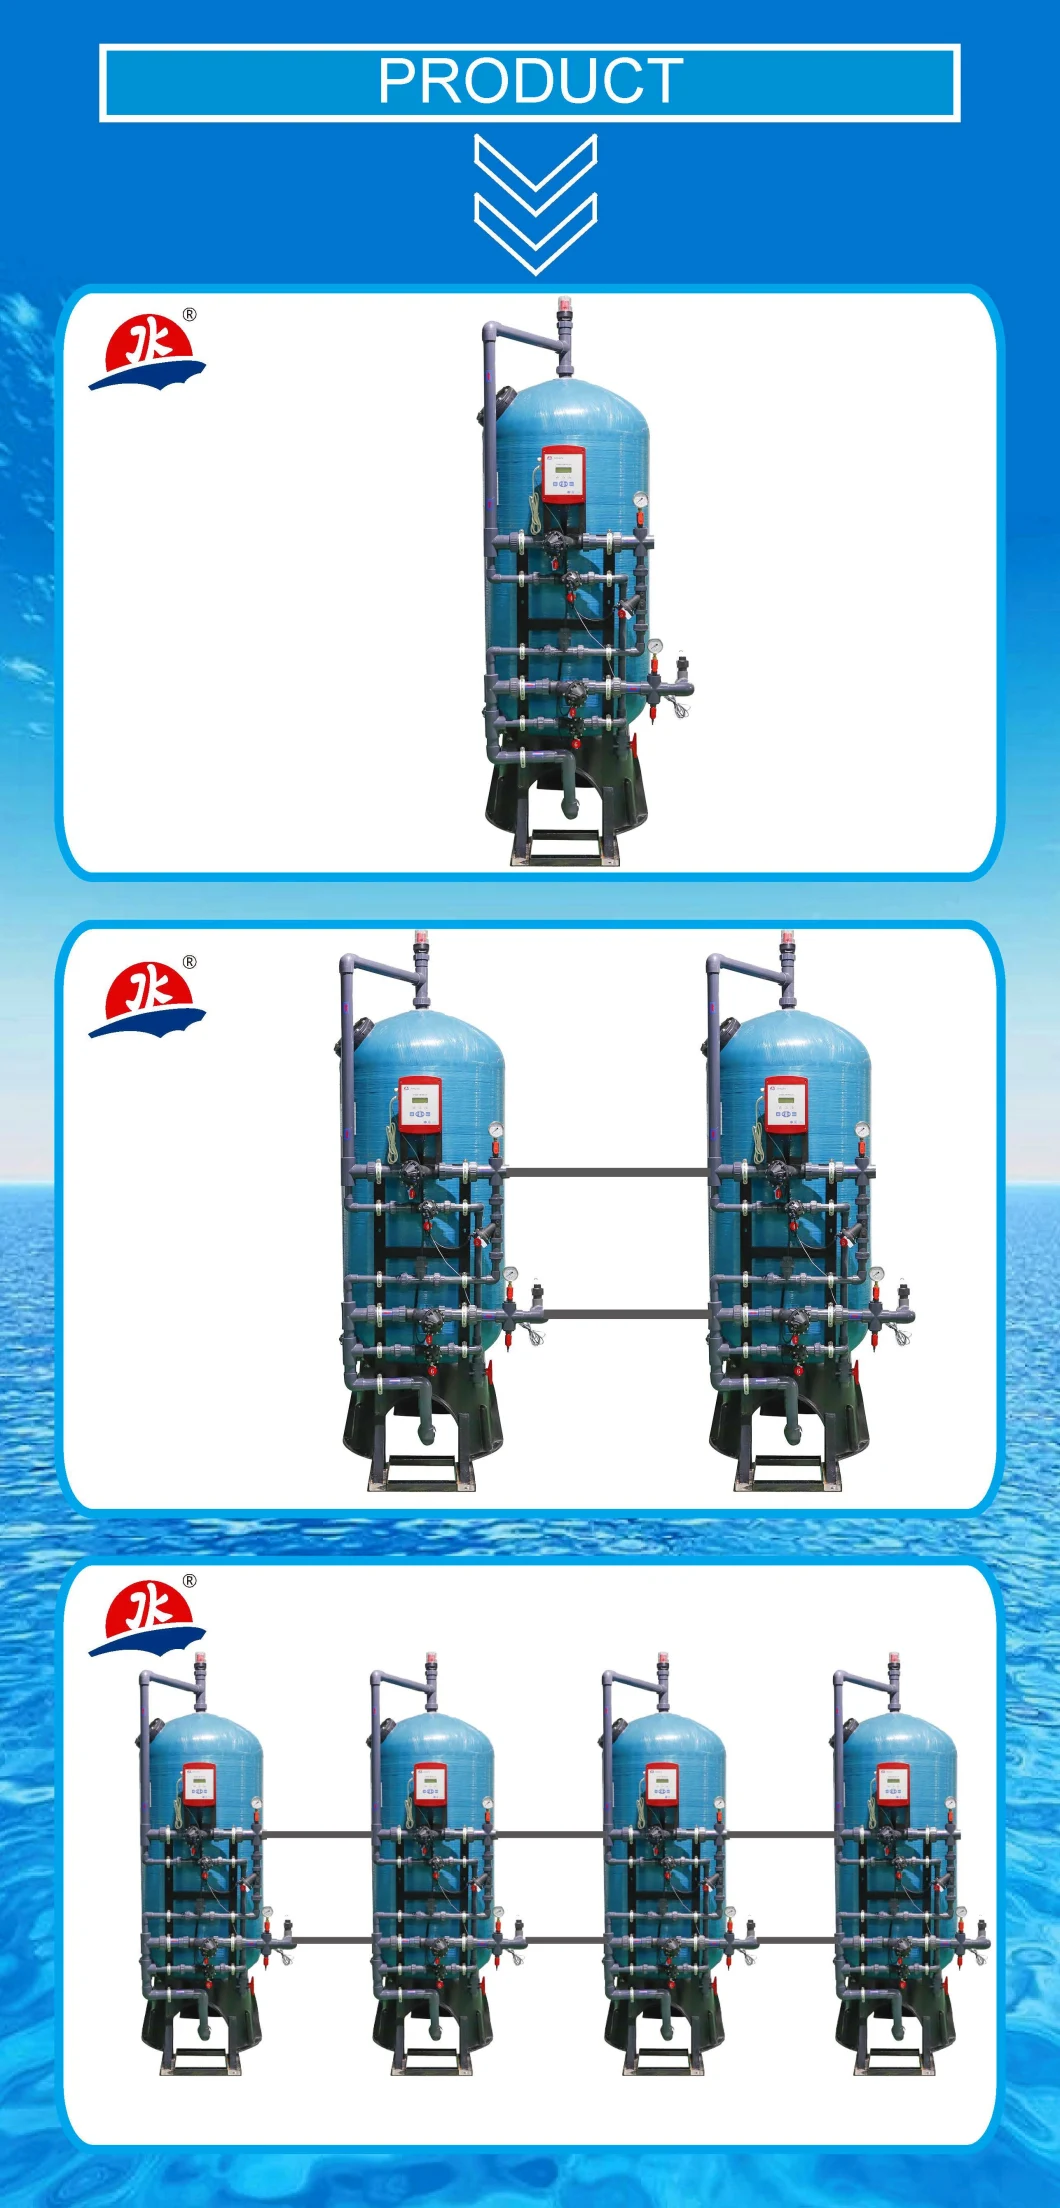 Jkmatic Jksd2 Industrial Water Multi-Media Filter and Softener Pressure Tanks for Water Softener